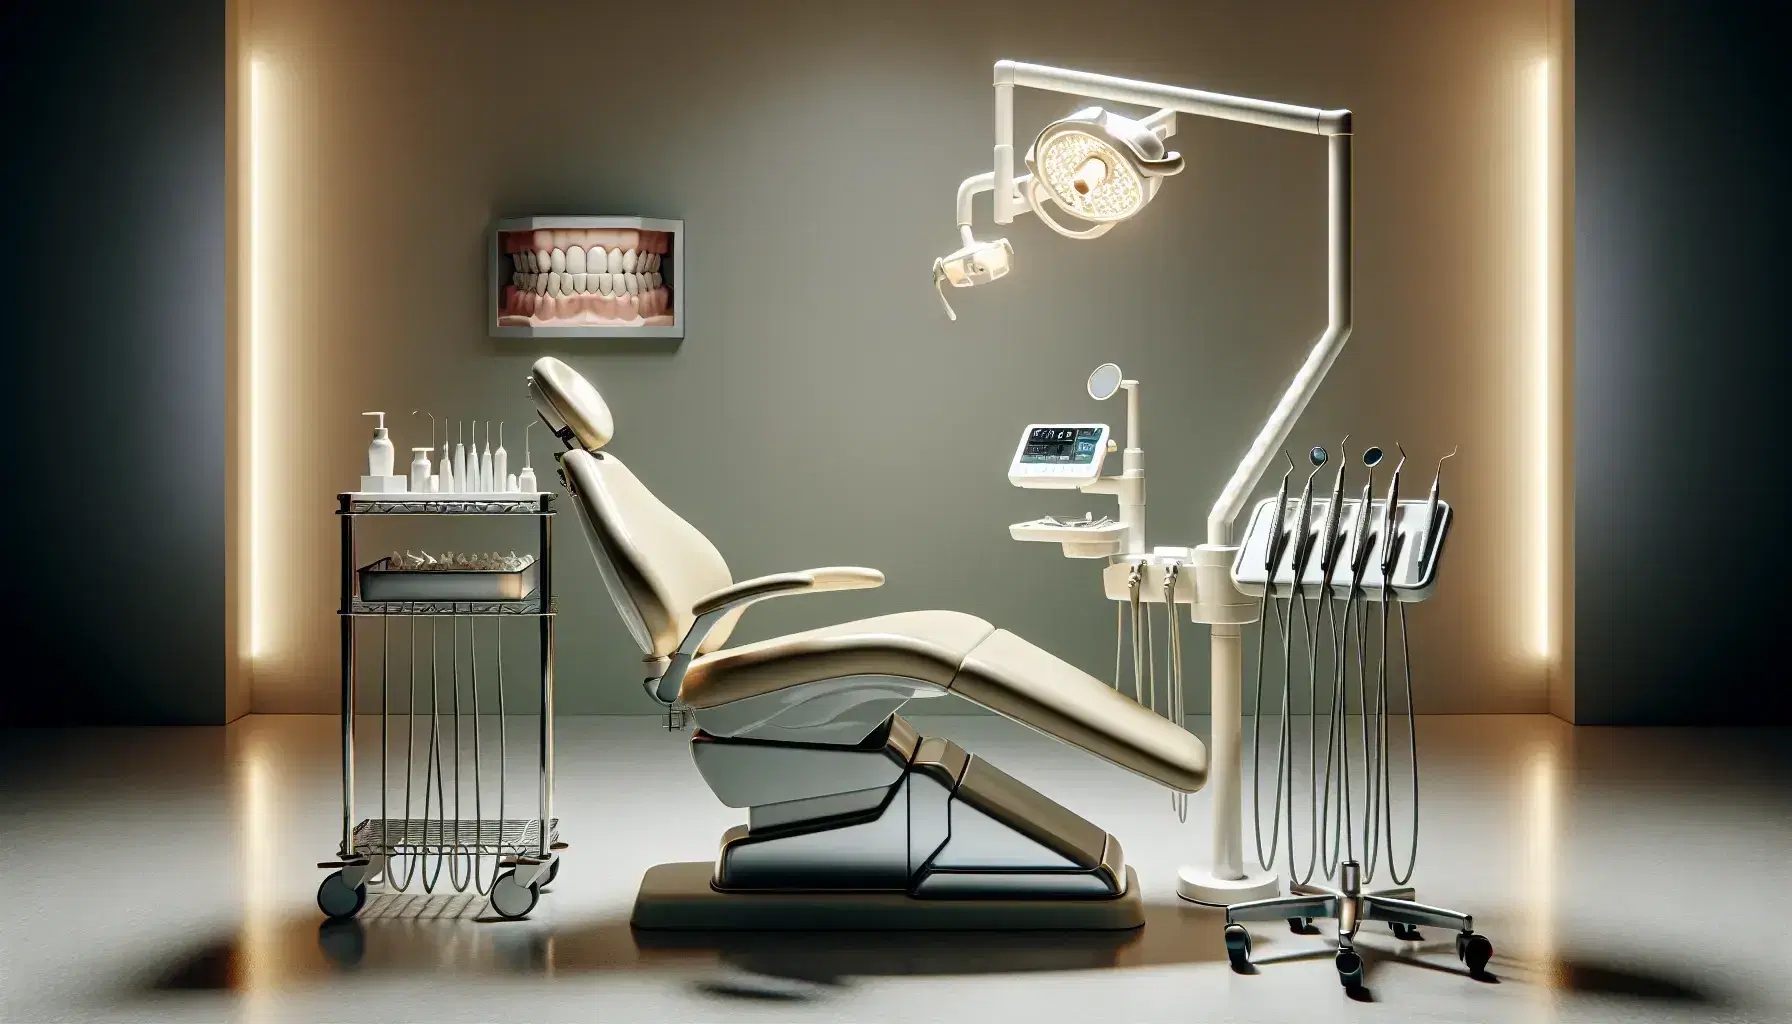 Consultorio dental moderno con silla de paciente iluminada por lámpara LED, carrito de instrumentos quirúrgicos y modelo de dientes en estante.